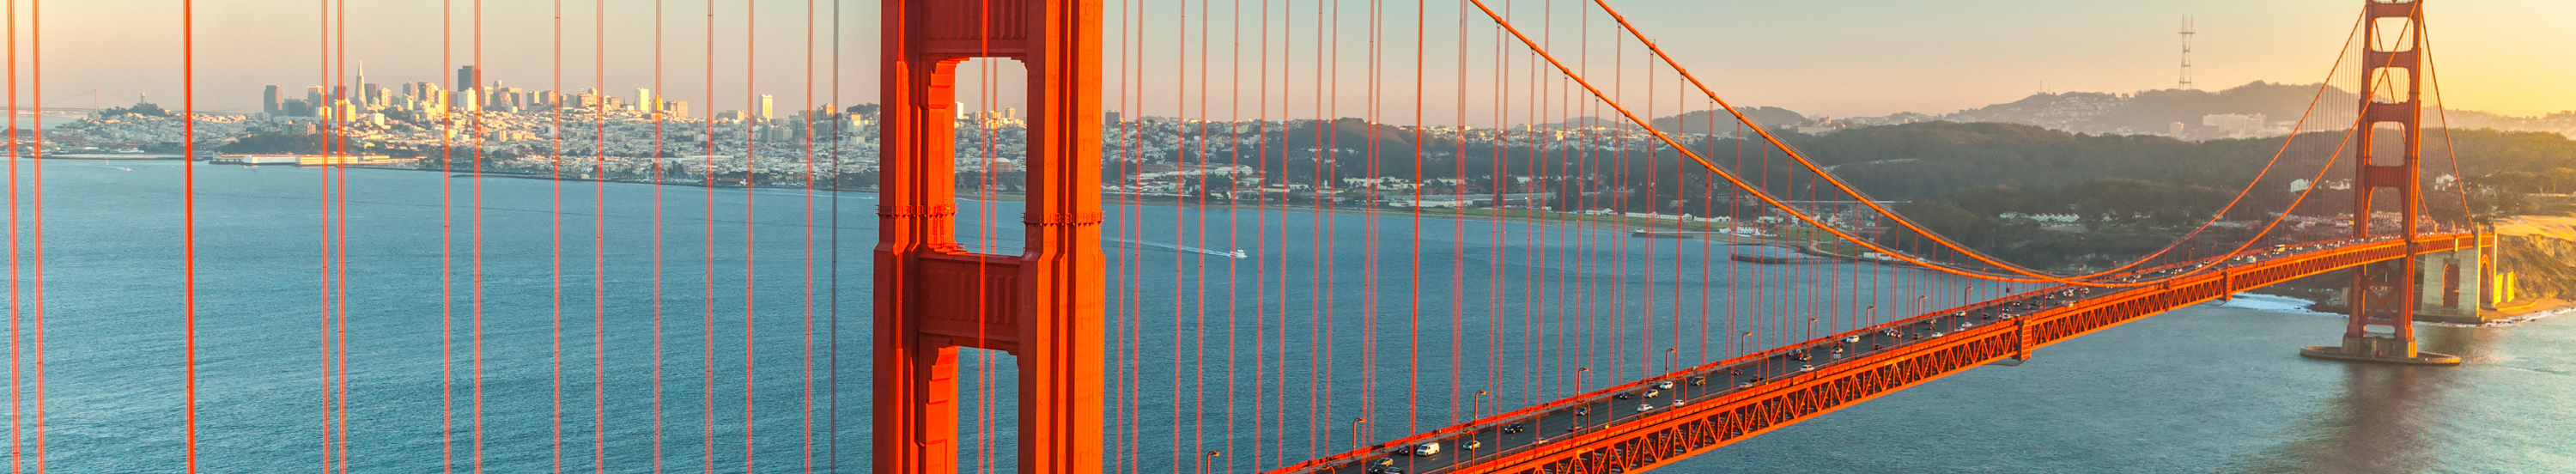 جسر البوابة الذهبية، سان فرانسيسكو